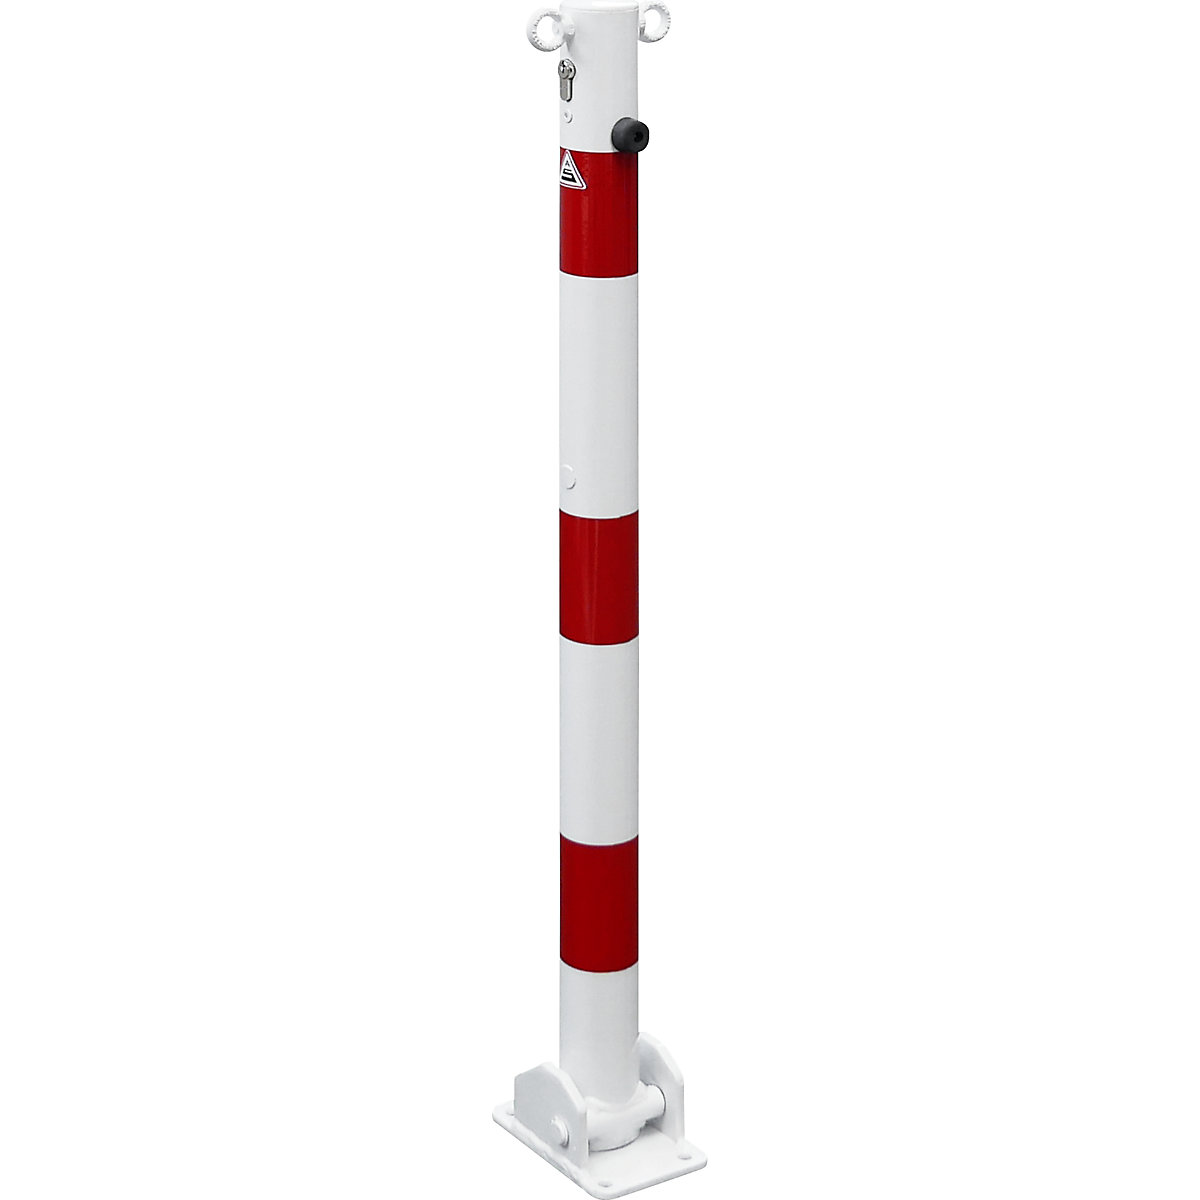 Stupić za ograđivanje, Ø 60 mm, u bijelo / crvenoj boji, s mogućnošću sklapanja i profilnim cilindrom, s 2 ušice